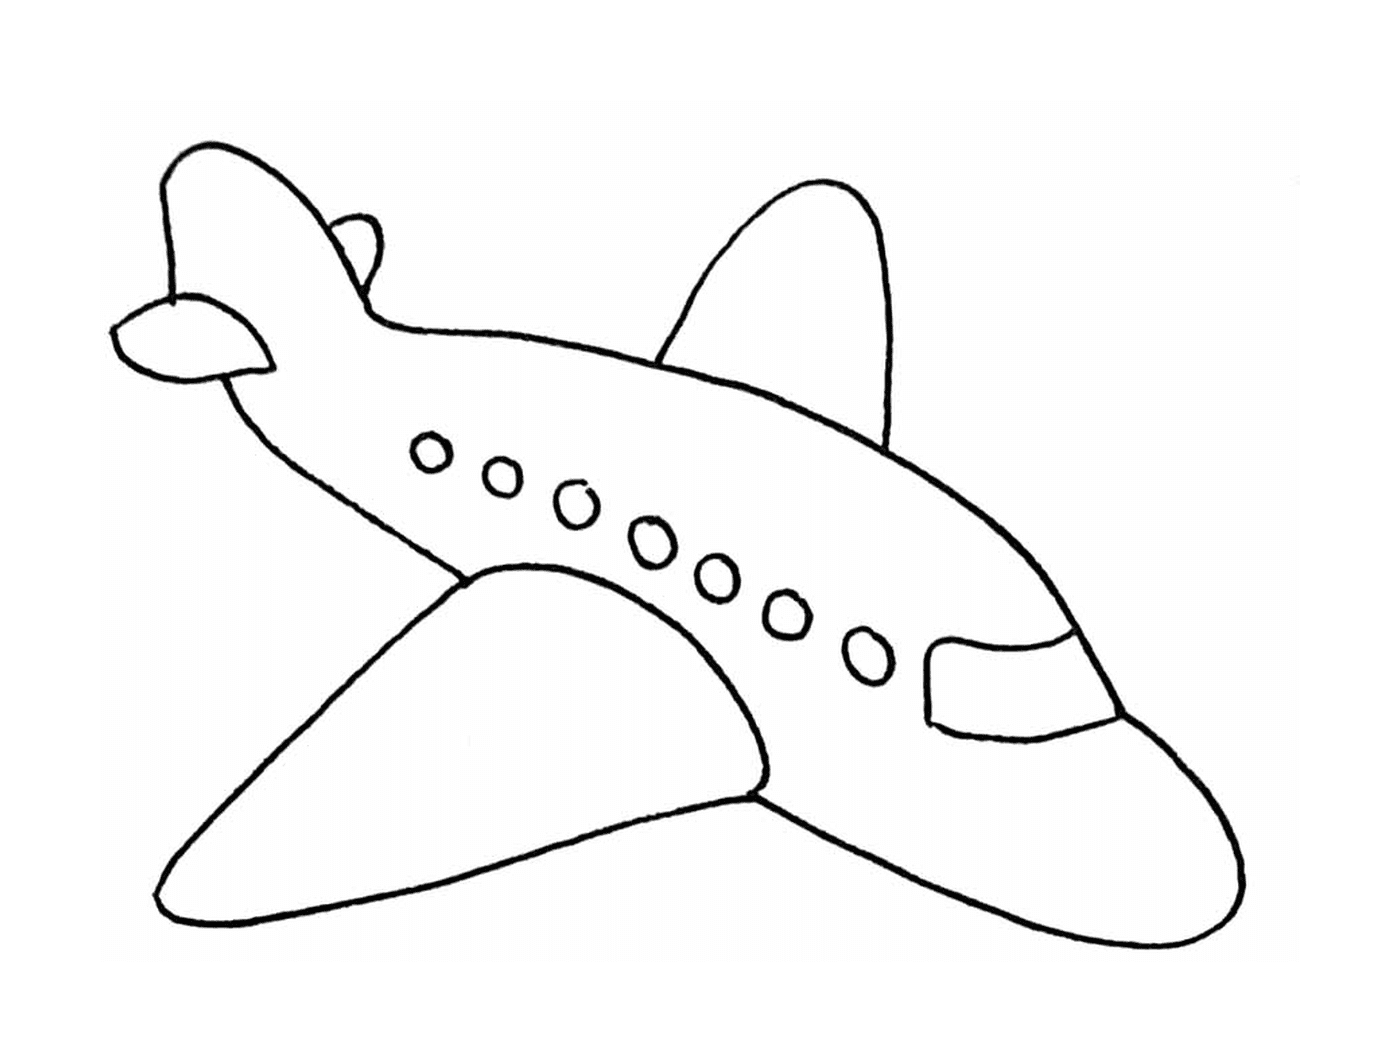  A plane that's drawn 